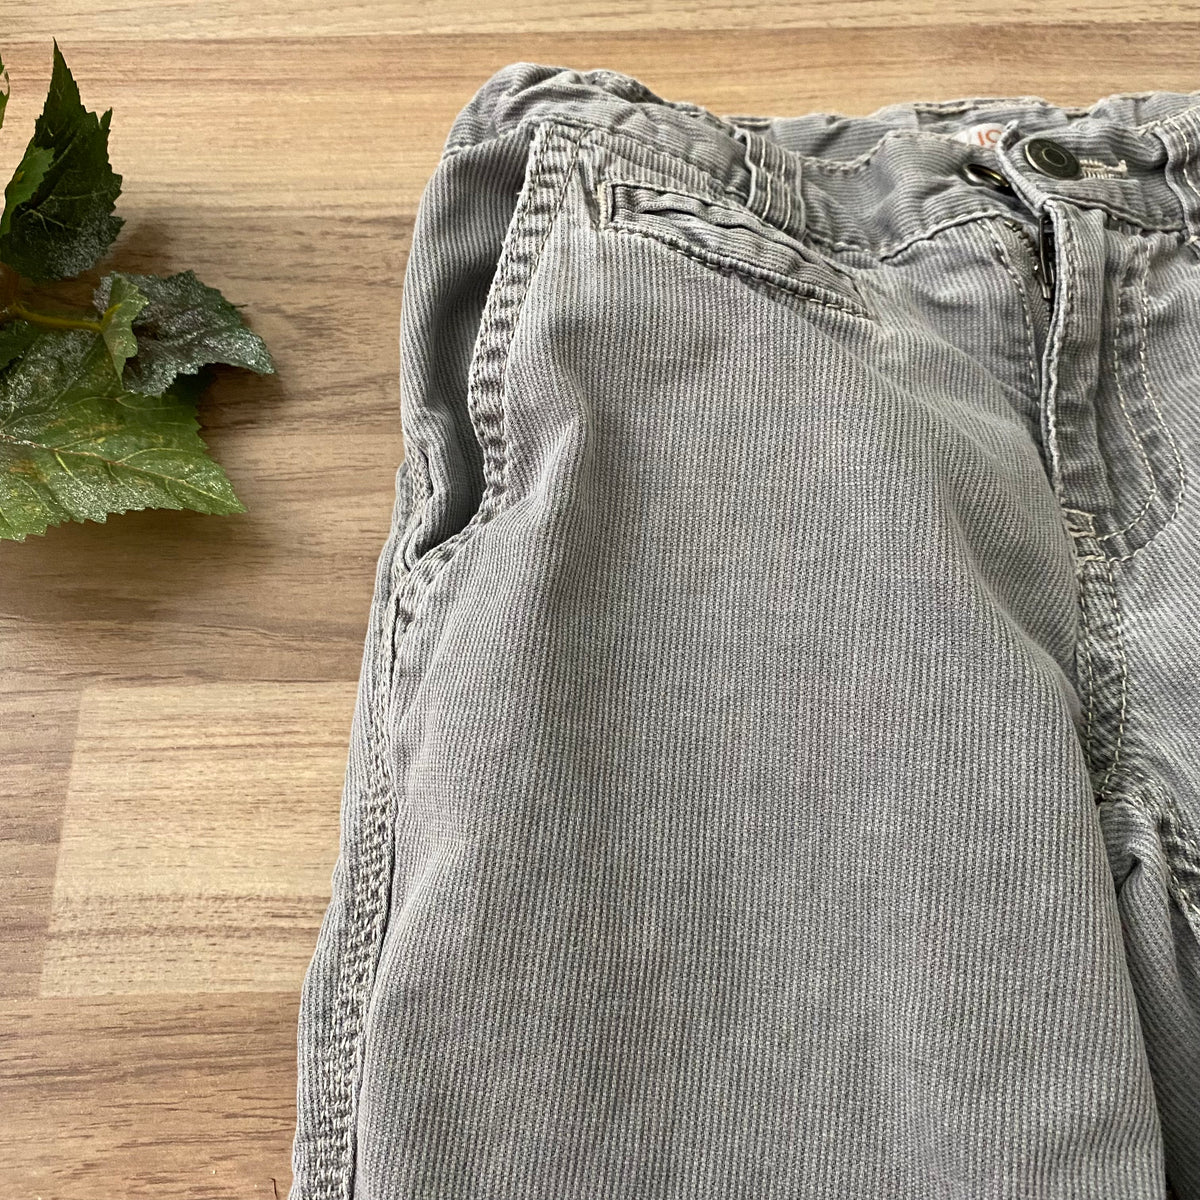 Pants (Boys Size 7)